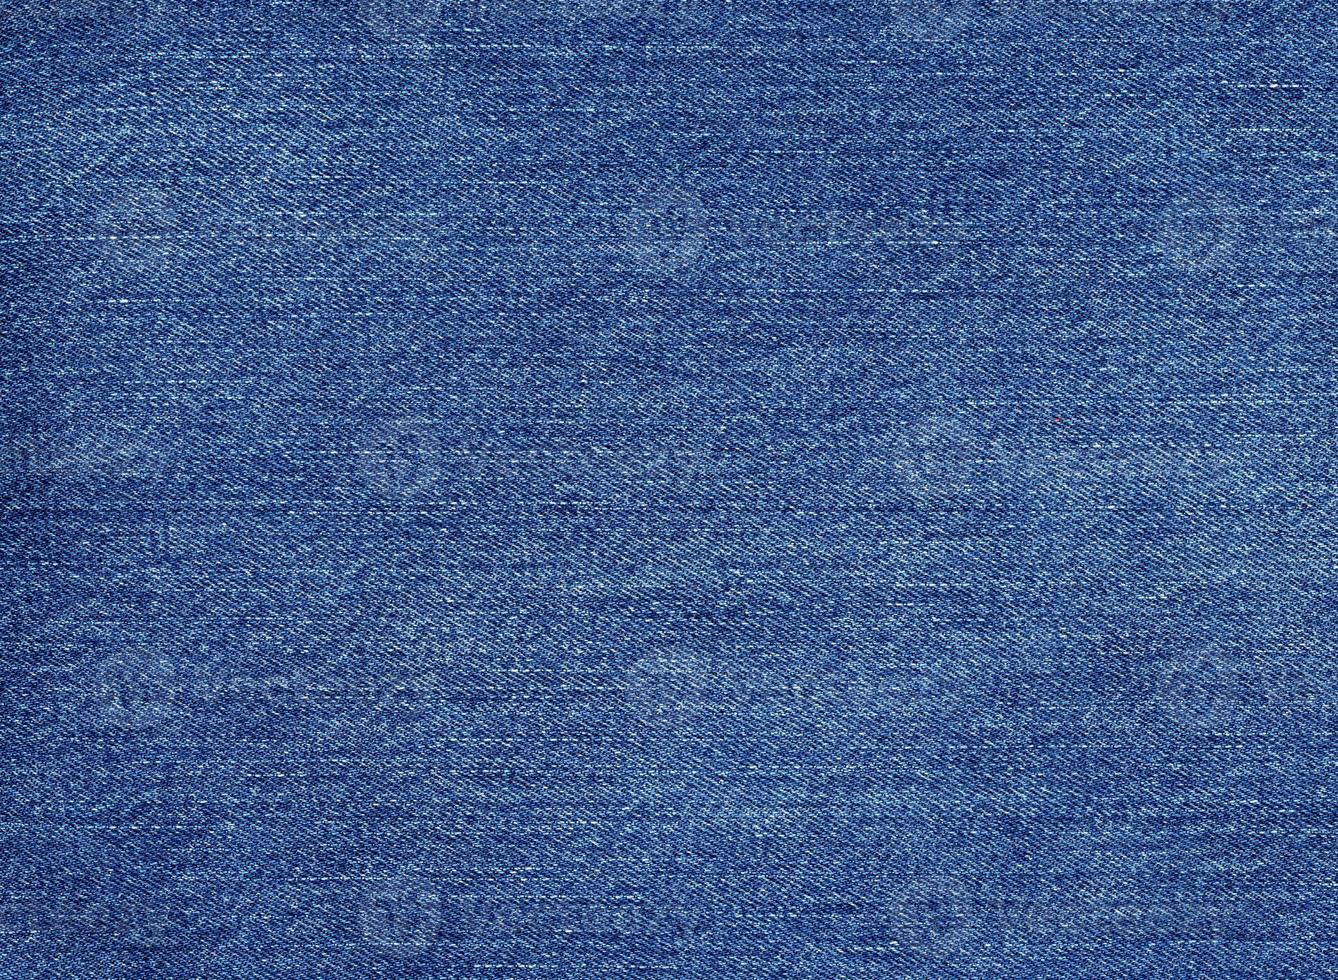 Blue Jeans Baumwollstoff Textur Hintergrund foto